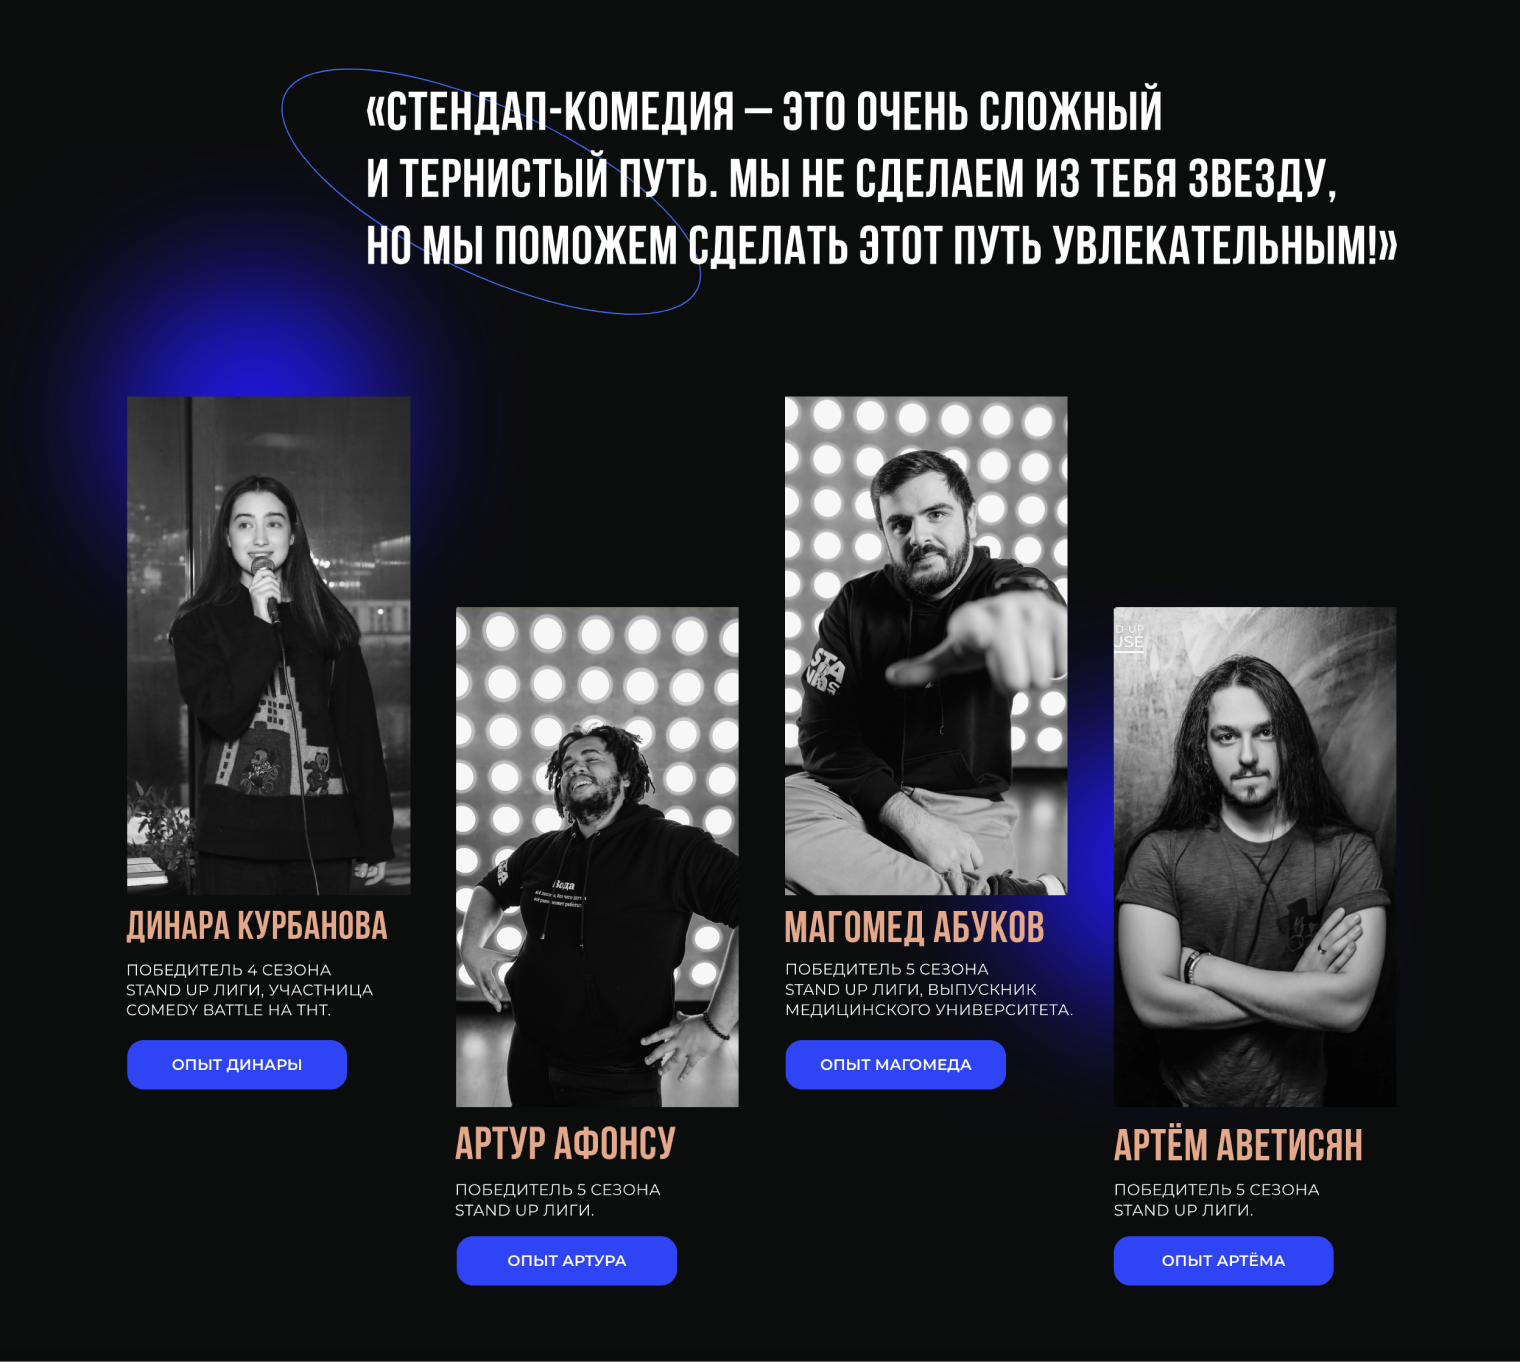 Постоянные участники проекта. Источник: ligastandup.ru